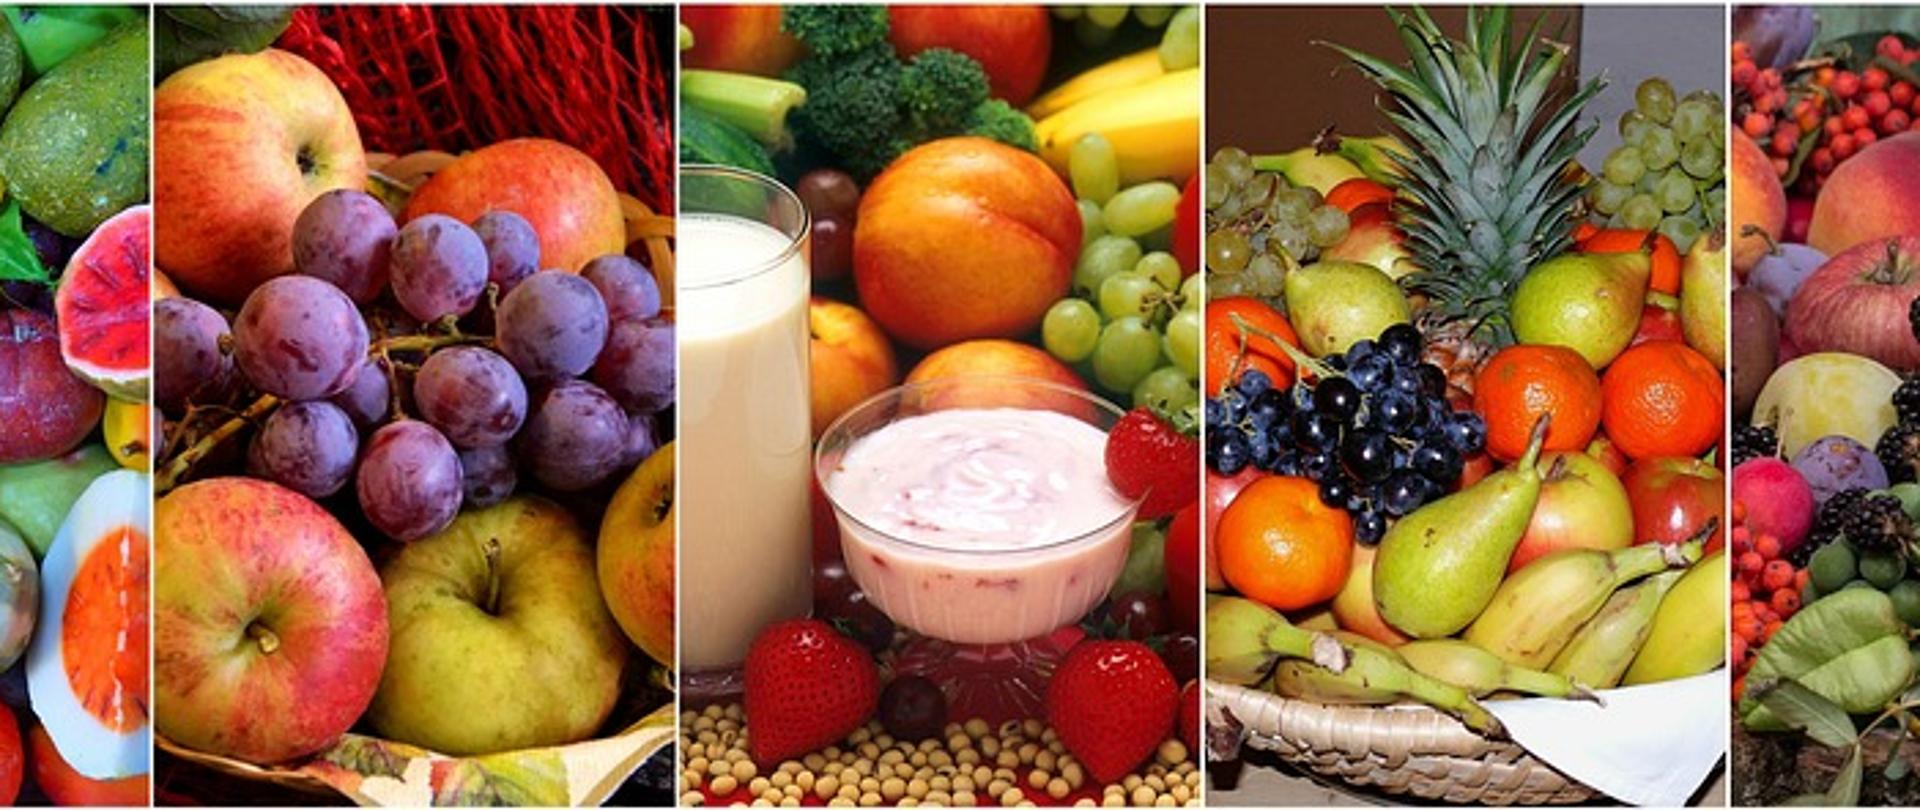 Po lewej stronie zdjęcia widoczne są winogrona oraz jabłka. Na środku zdjęcia widoczne są truskawki oraz szklanka mleka. Po prawej stronie zdjęcia widoczne są gruszki, mandarynki, winogrona oraz ananas.